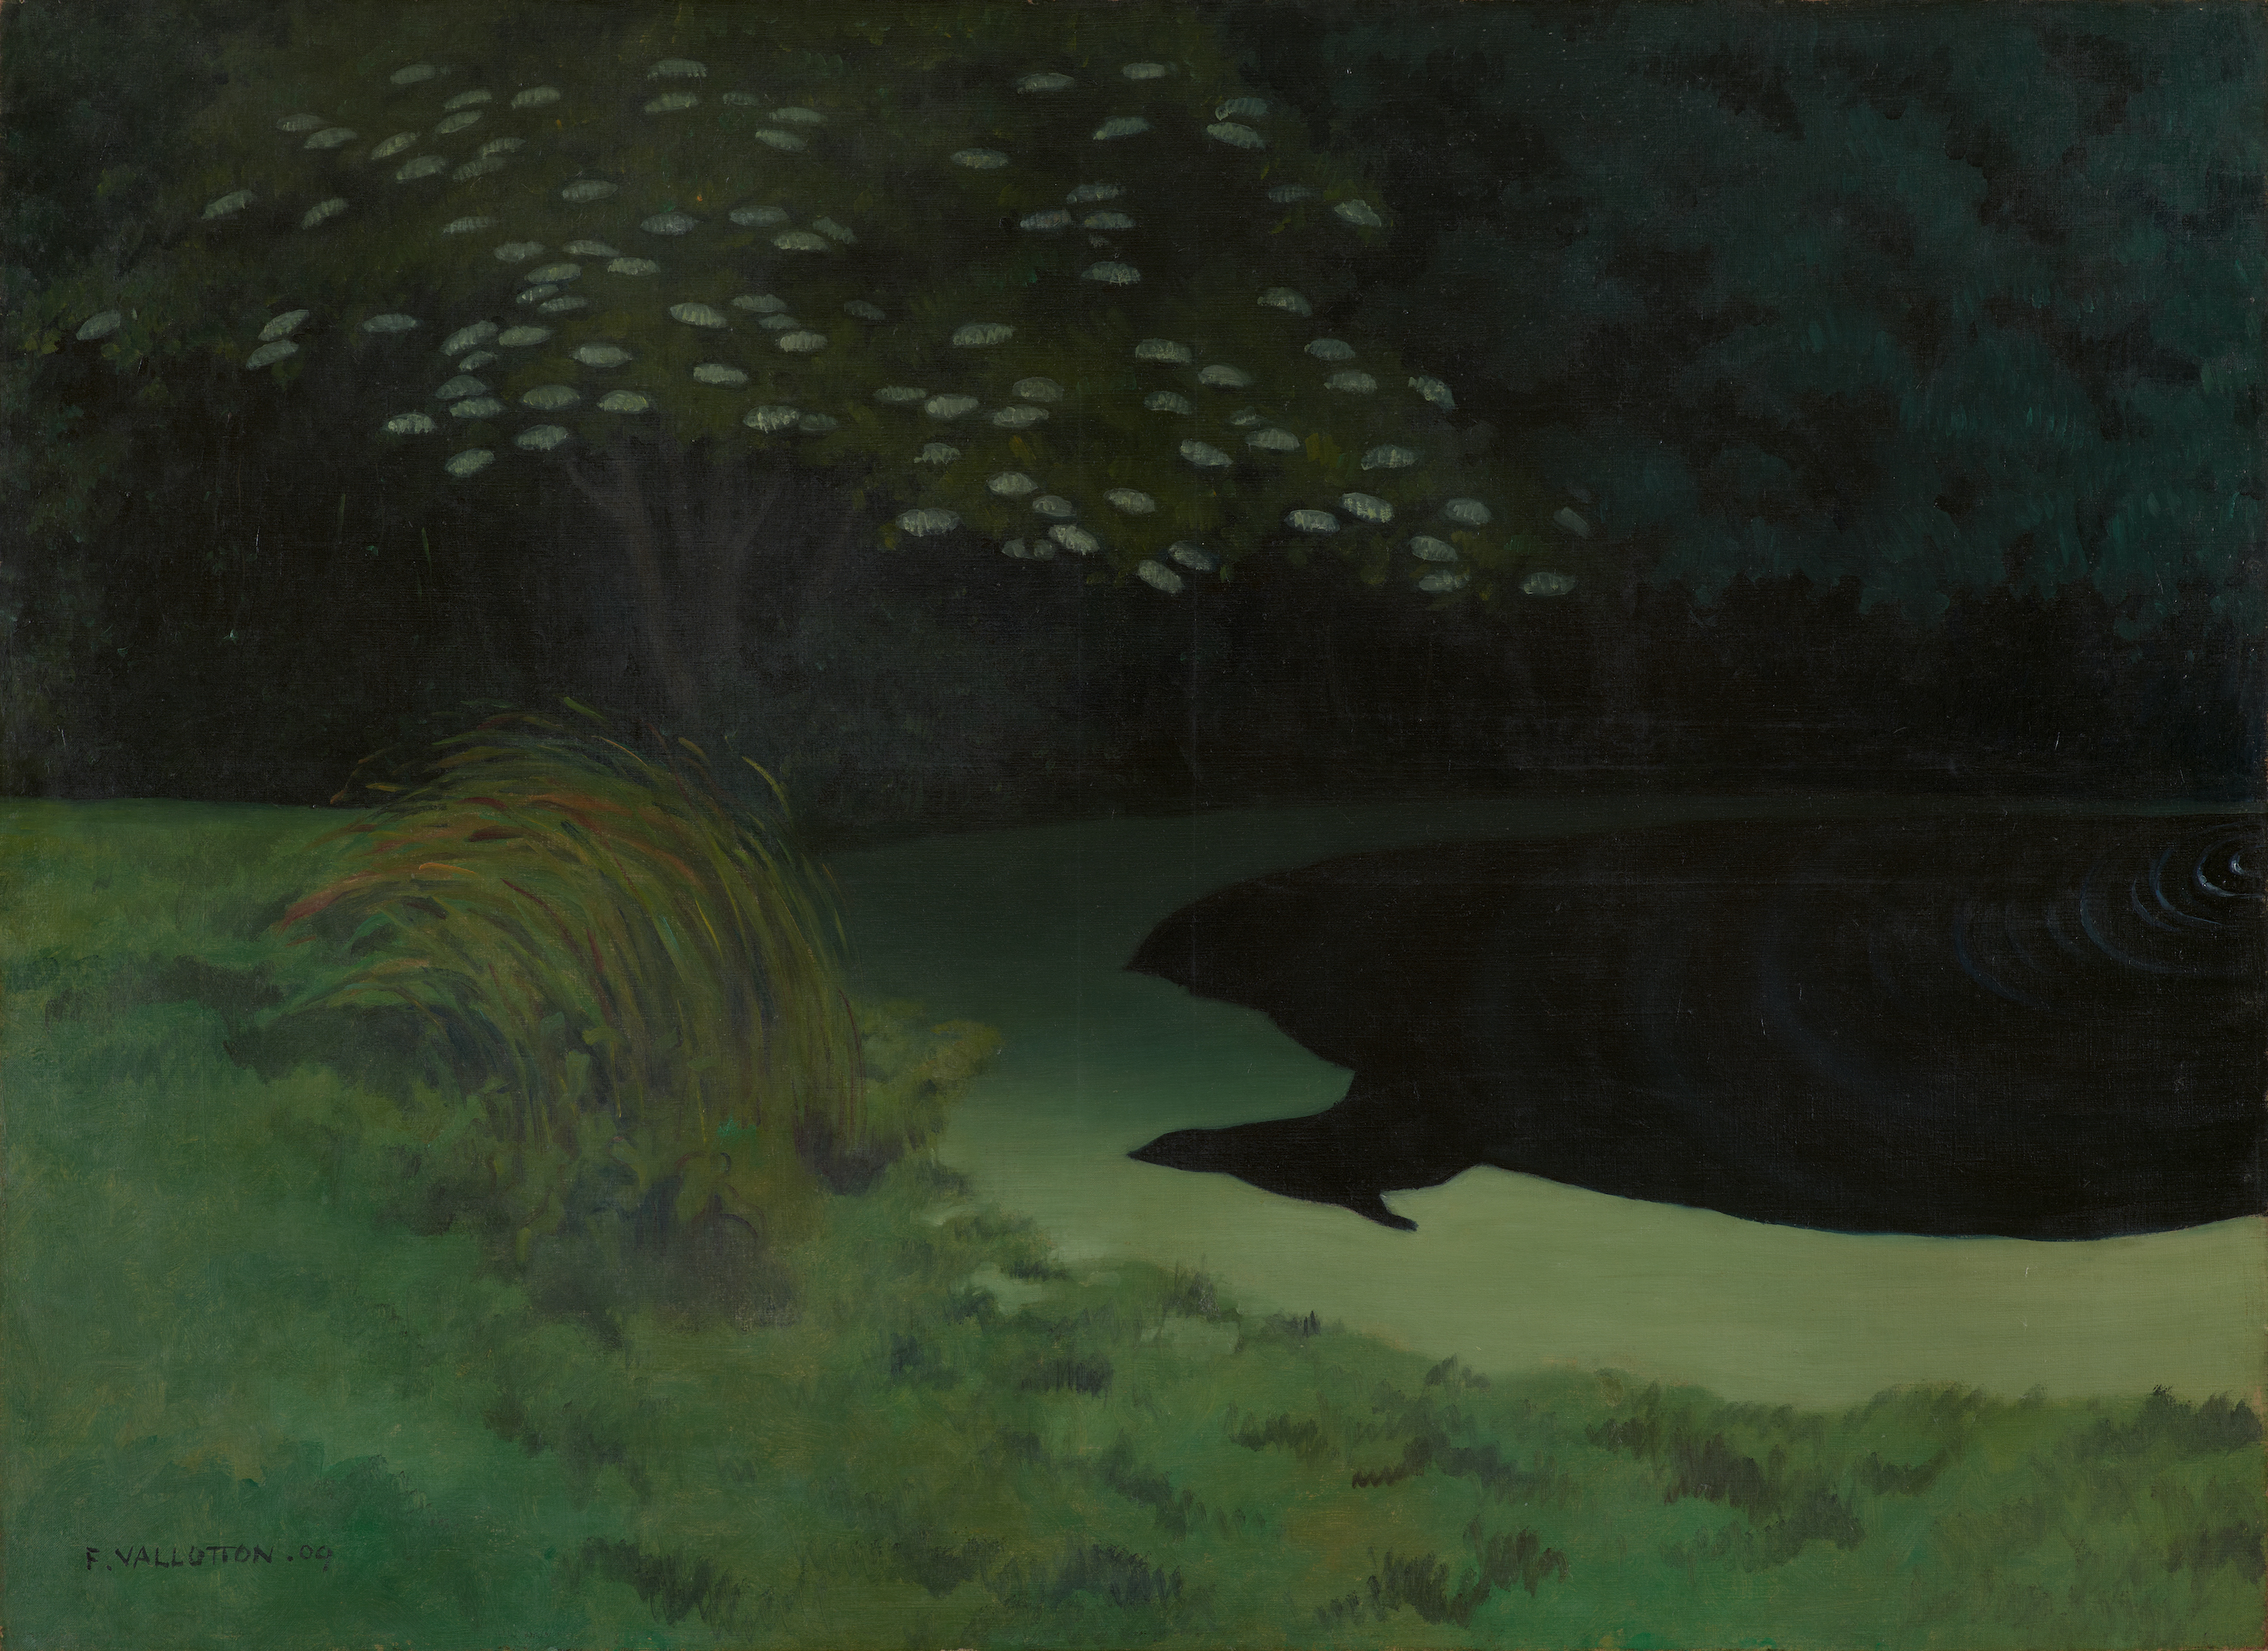 池塘 (Honfleur) by 费利克斯 瓦洛顿 - 1909 - 73.2 x 100.2 cm 巴塞尔美术馆